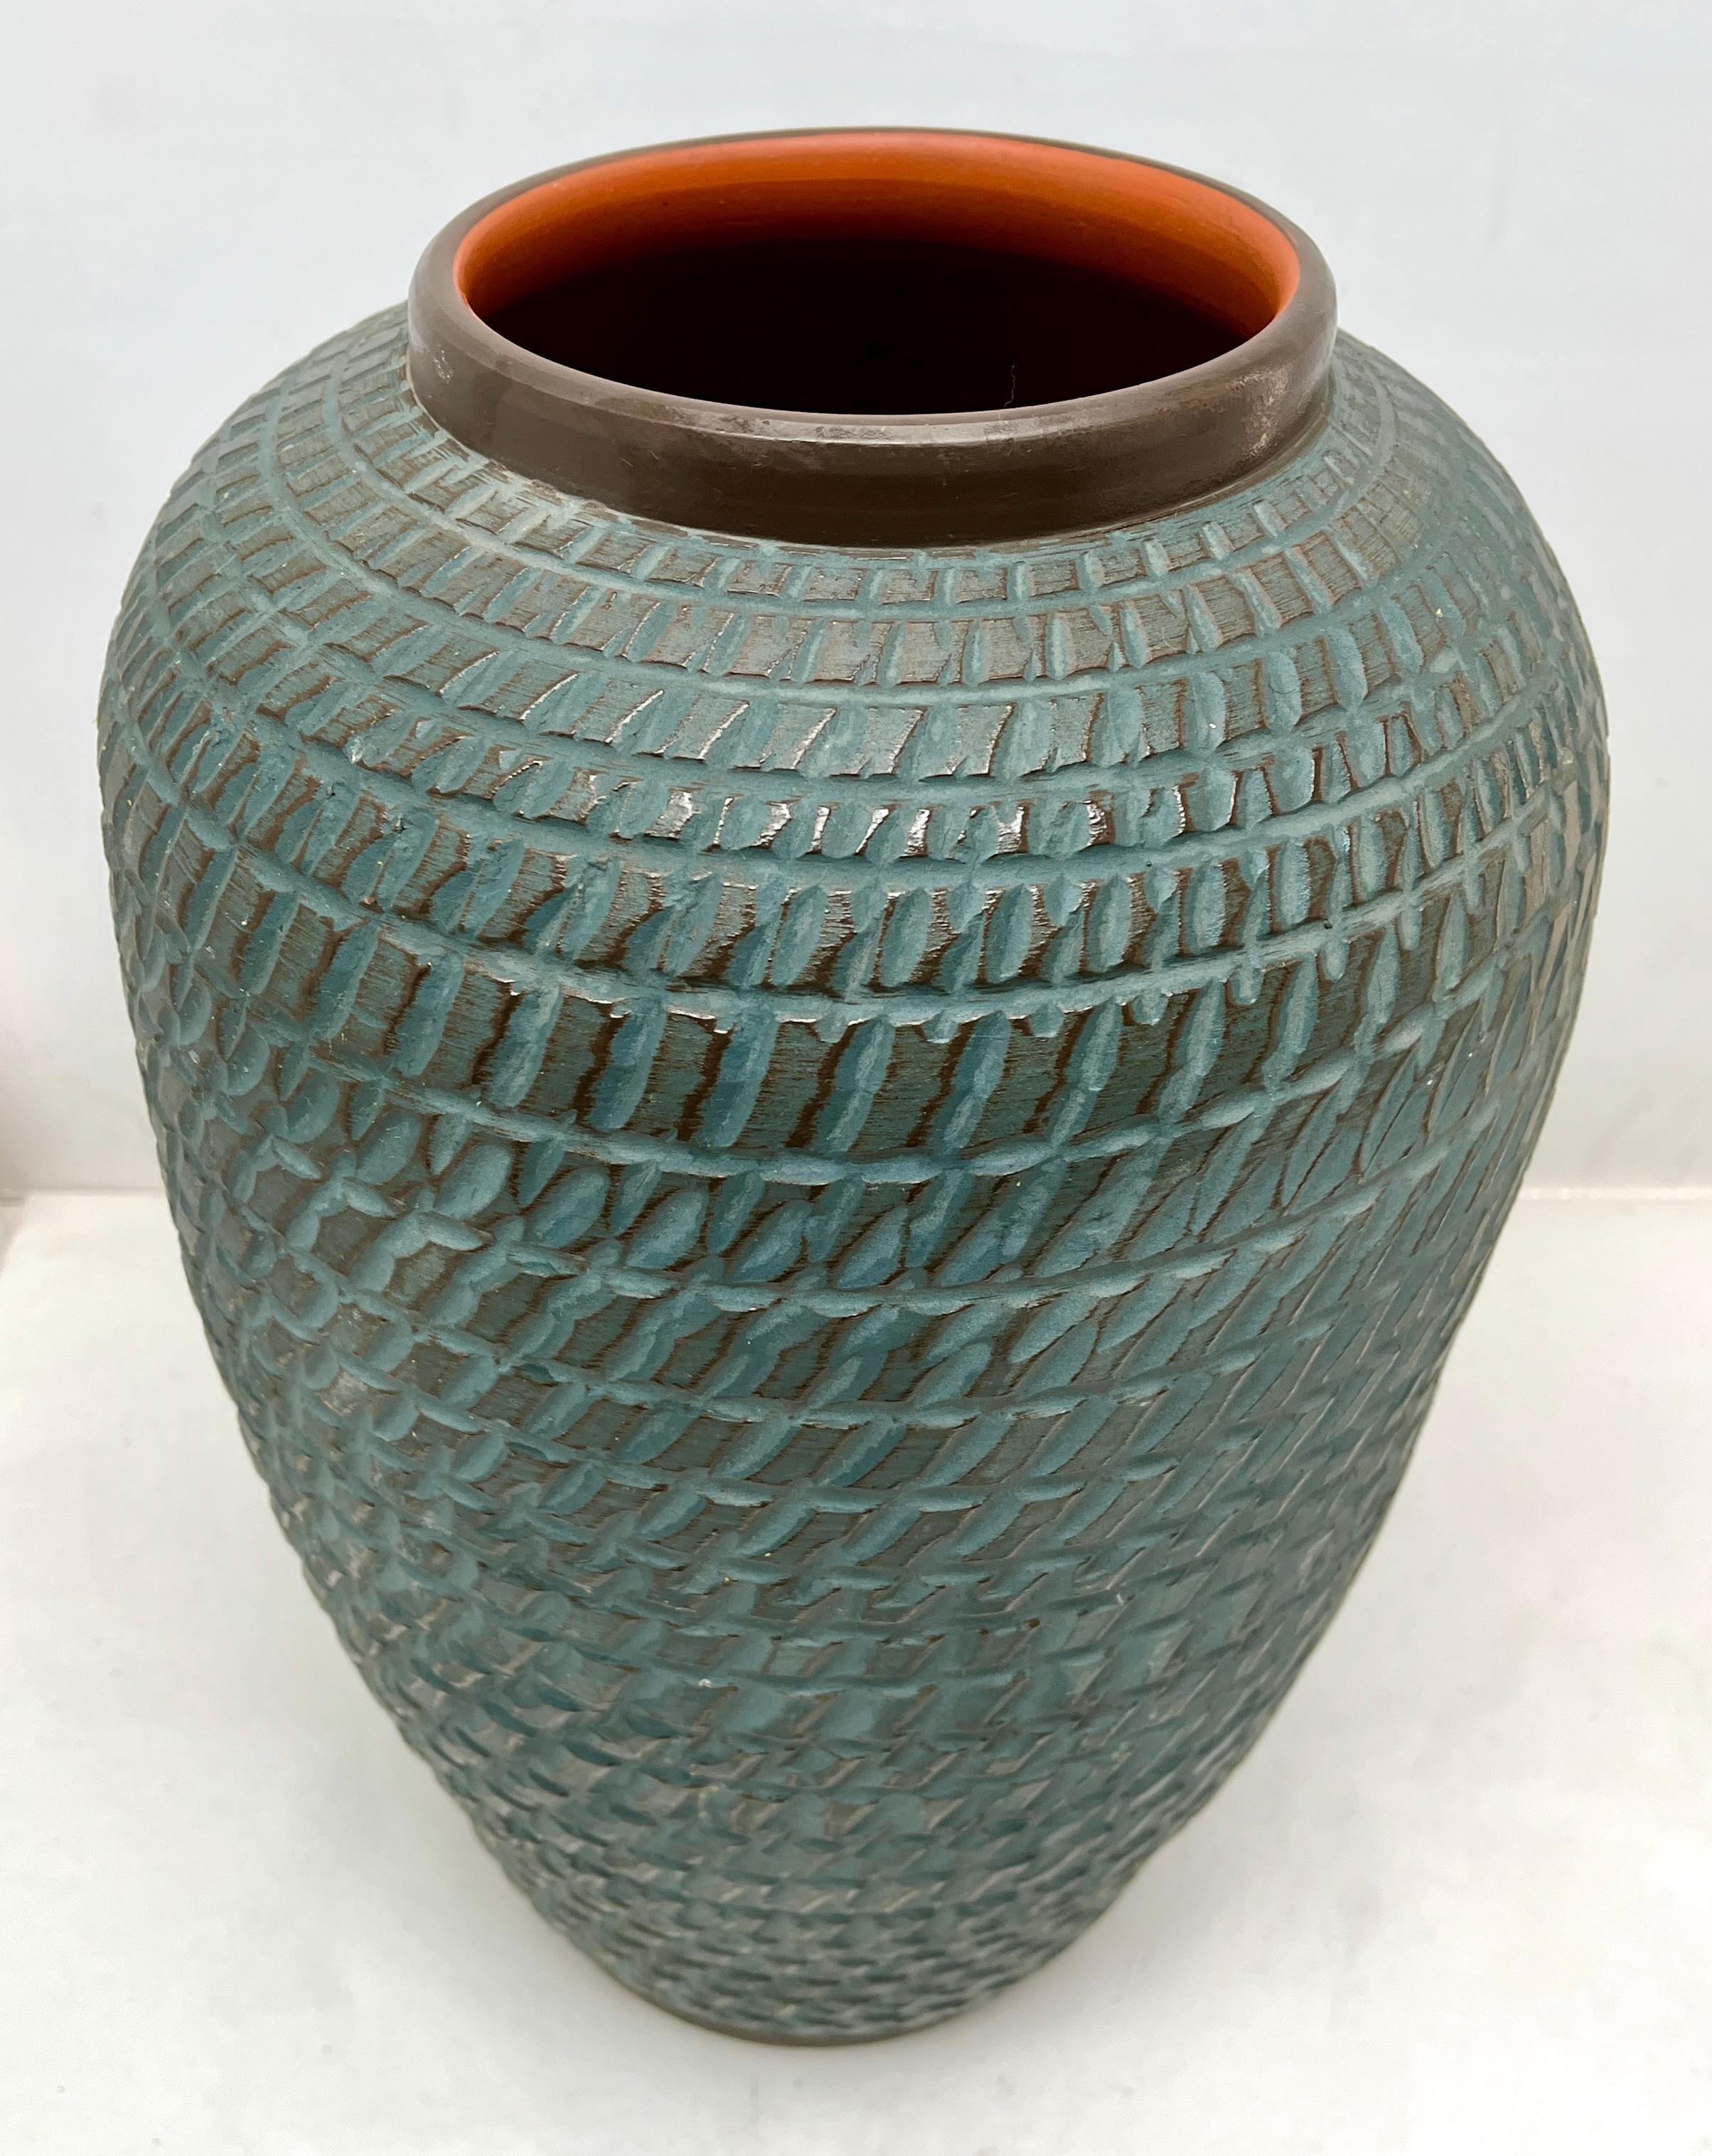 Diese originelle Vintage-Vase wurde in den 1970er Jahren in Deutschland hergestellt. Sie ist aus Keramik gefertigt.
Auf dem Boden ist die Vasenseriennummer 40 Handarbeit vermerkt.
Geradliniges und minimalistisches Design aus den 1960er Jahren.